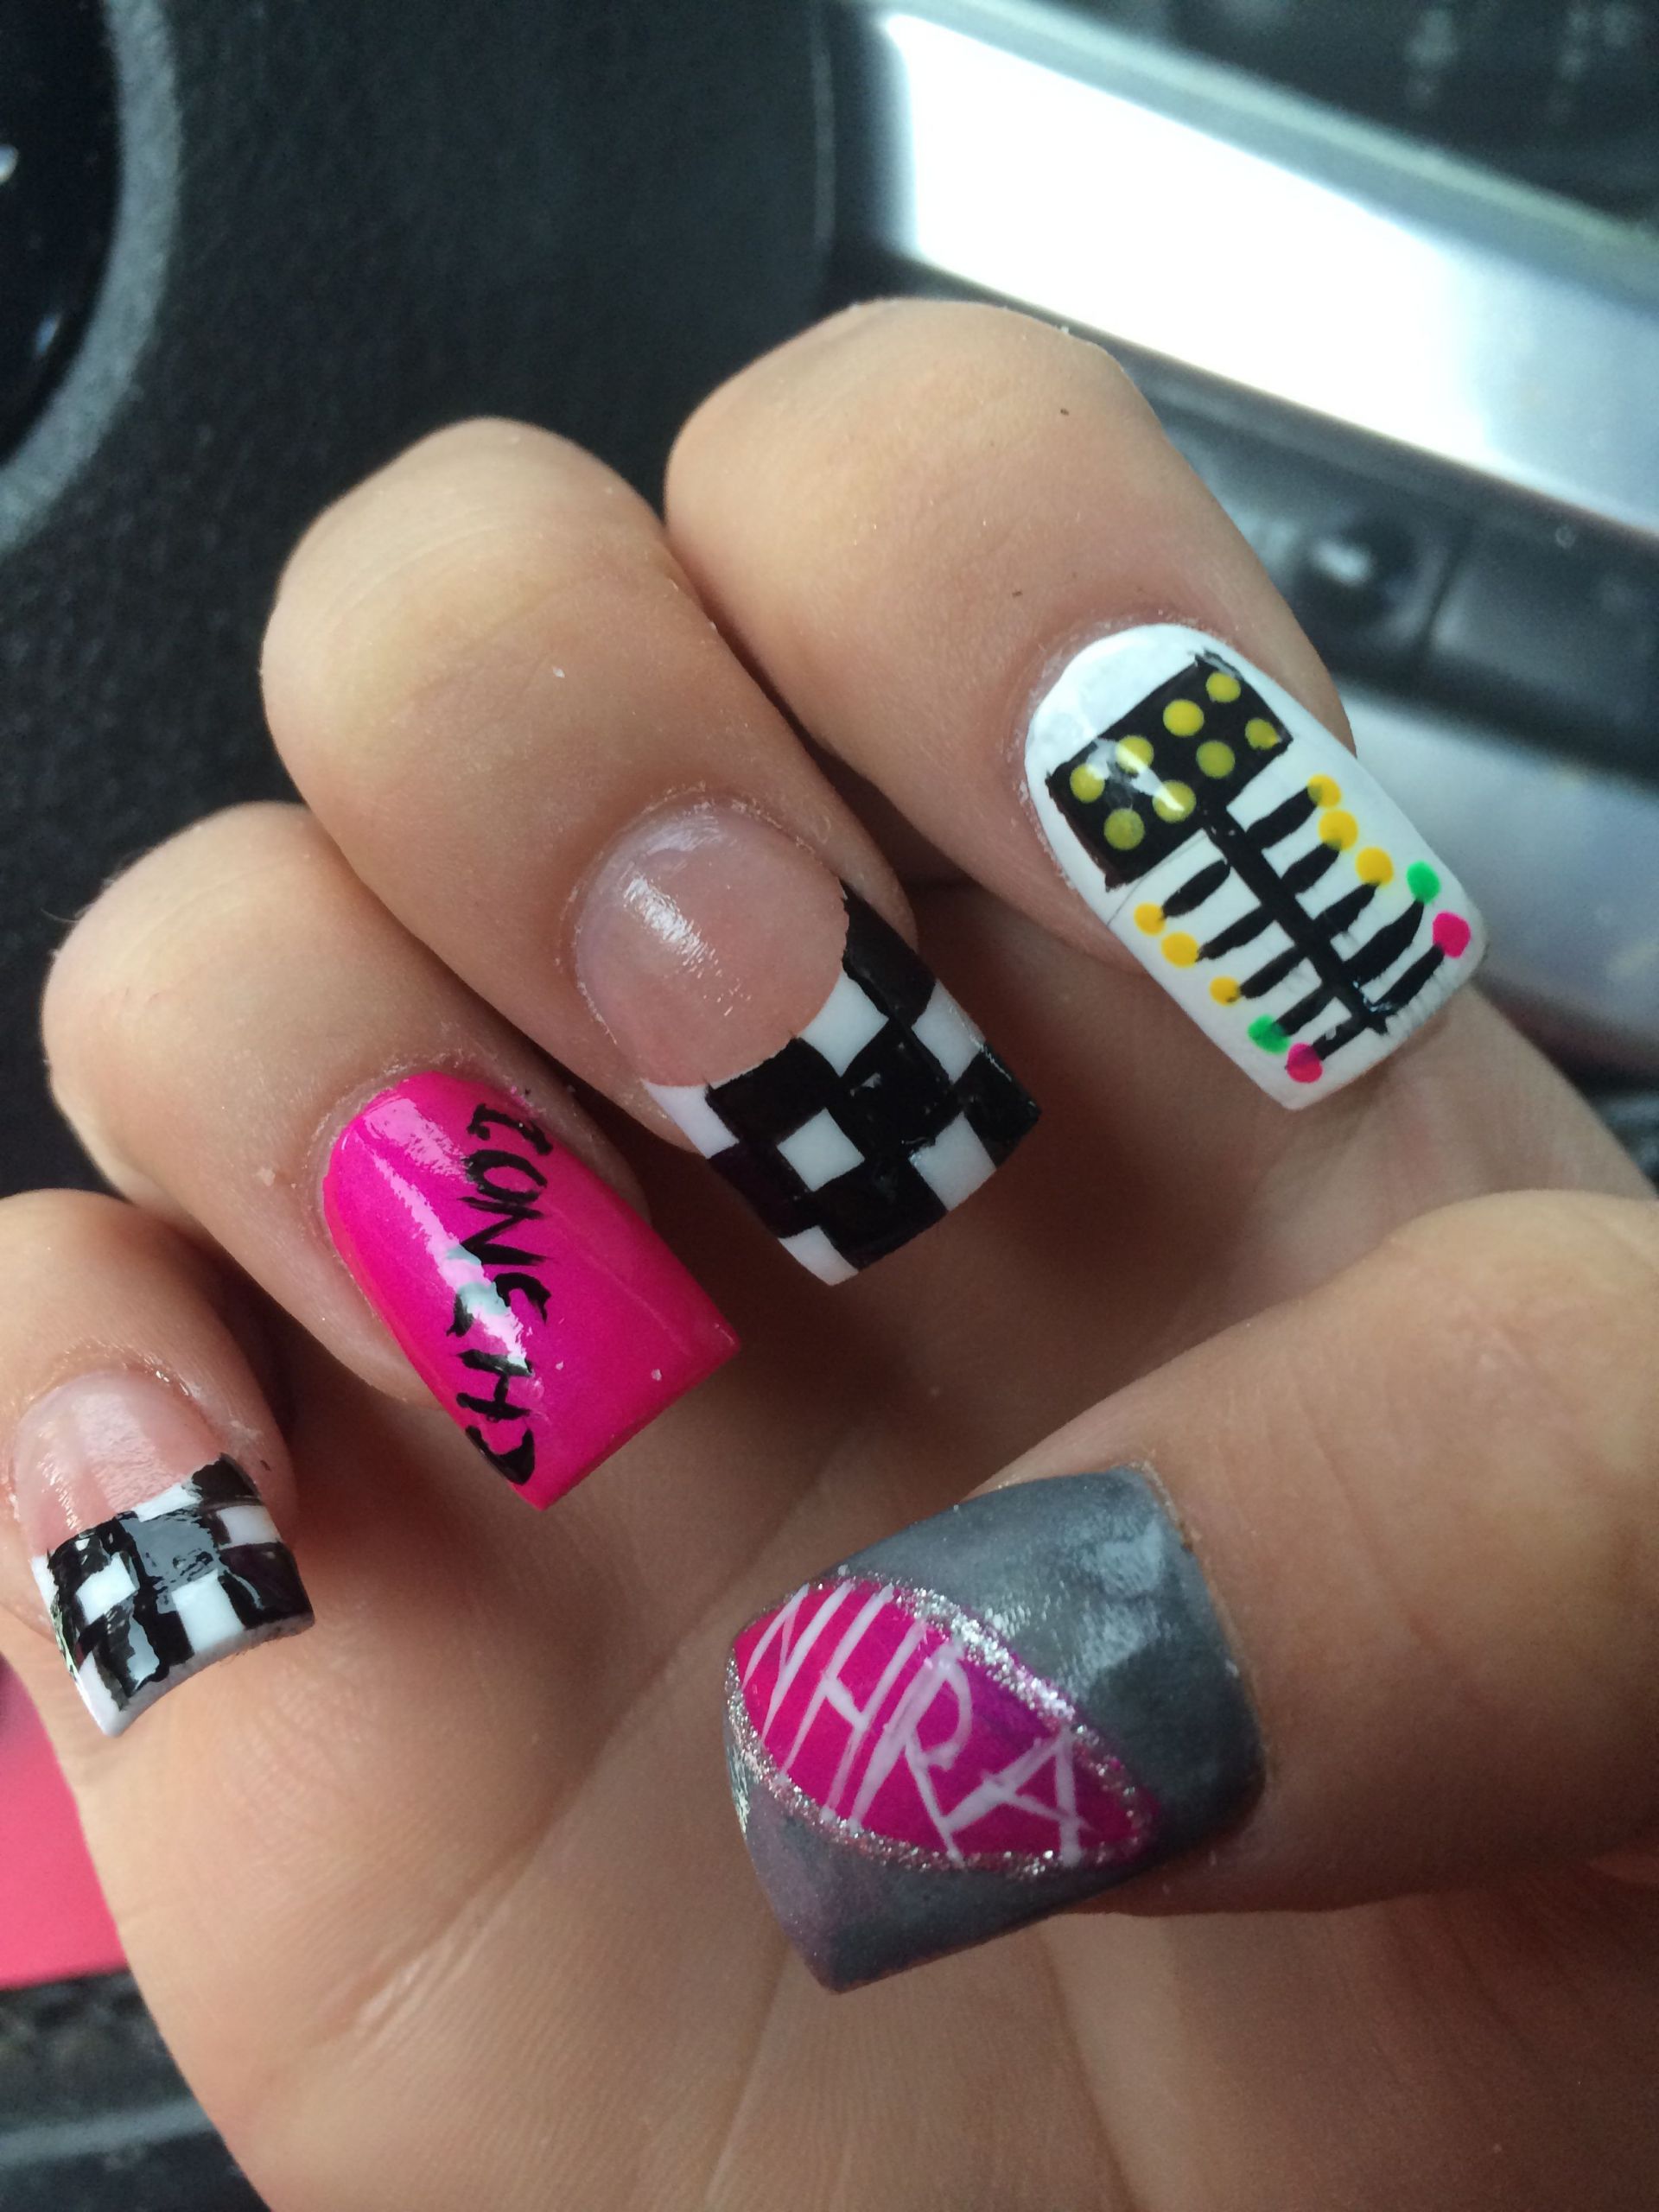 Racing Nail Designs
 NHRA drag racing nails I want OMG